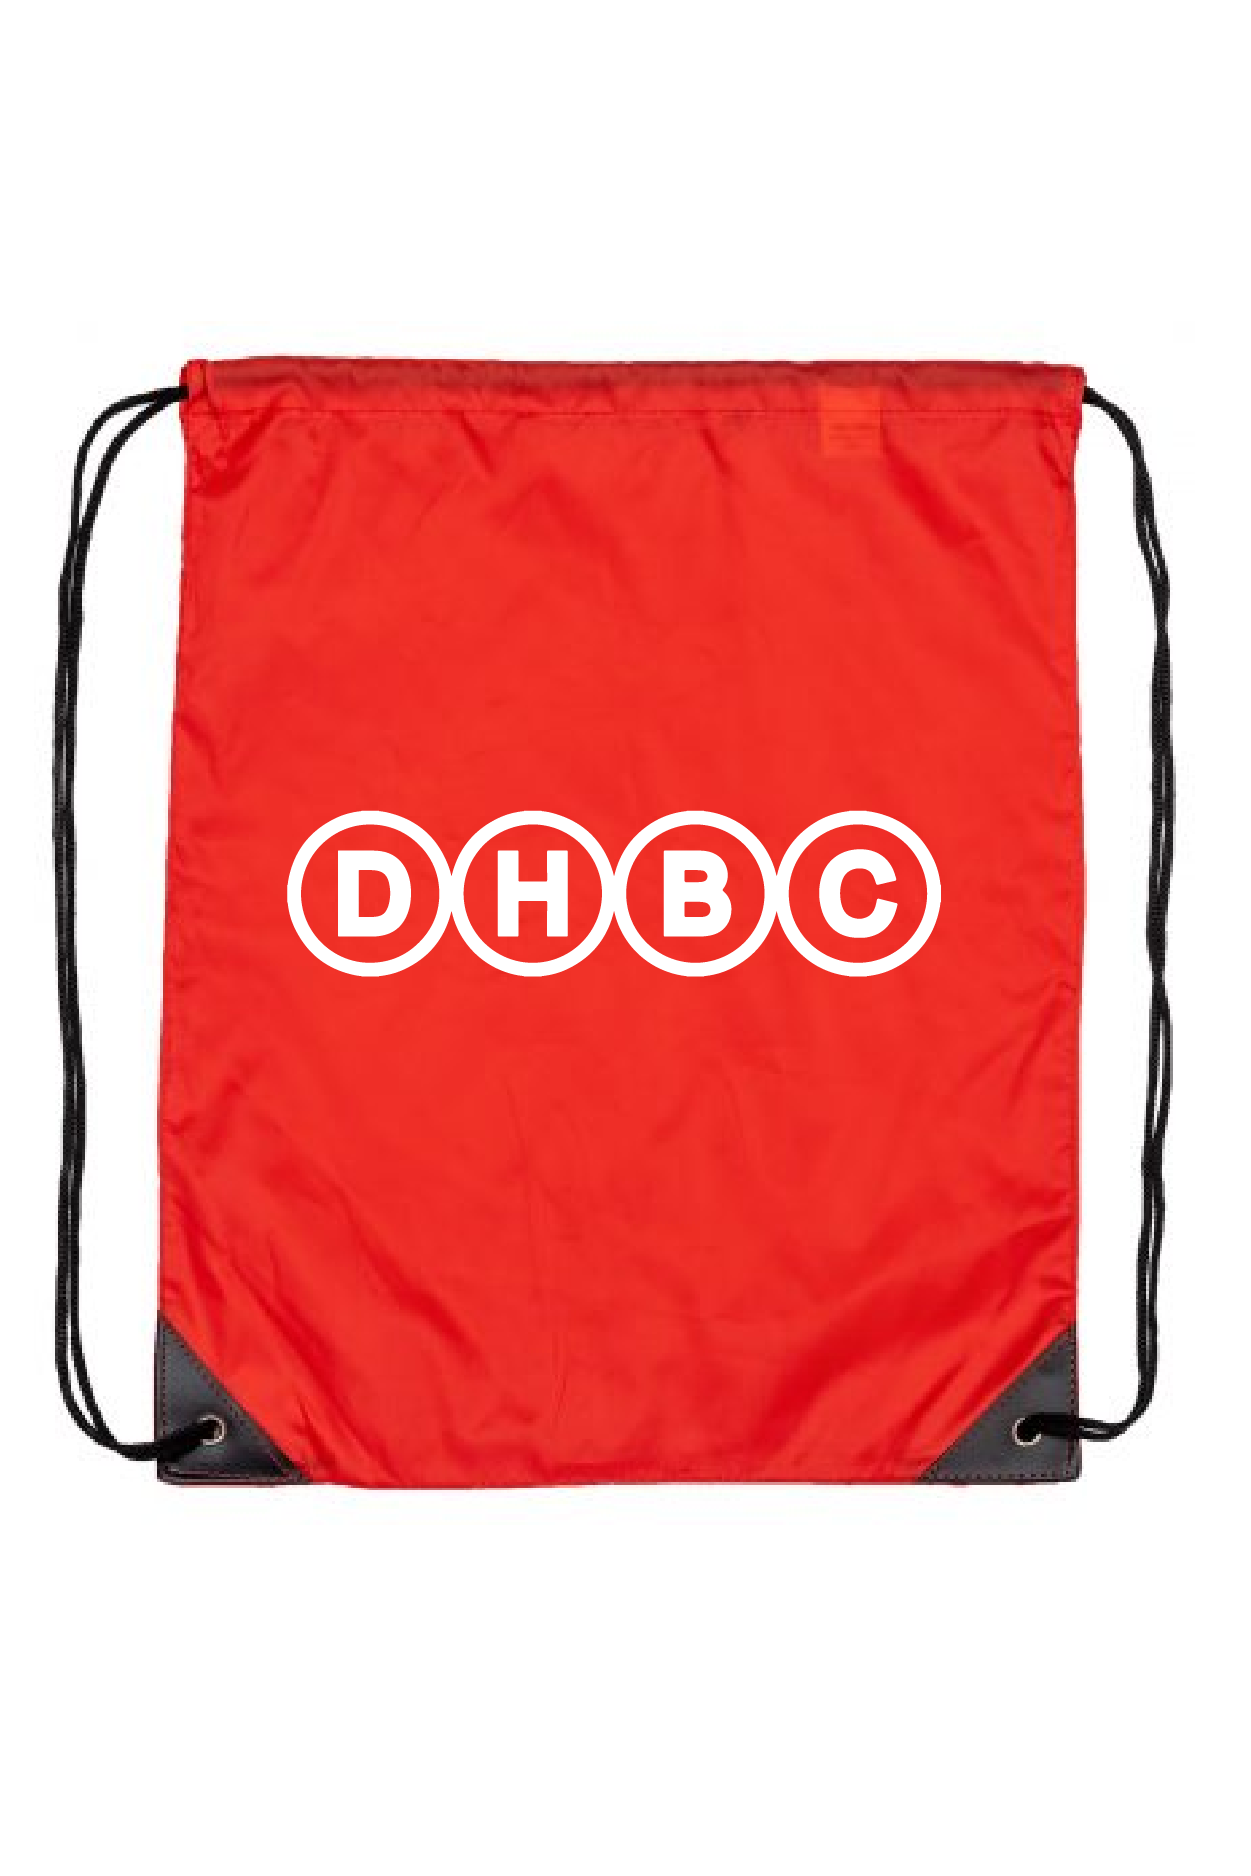 DHBC Drawstring Bag